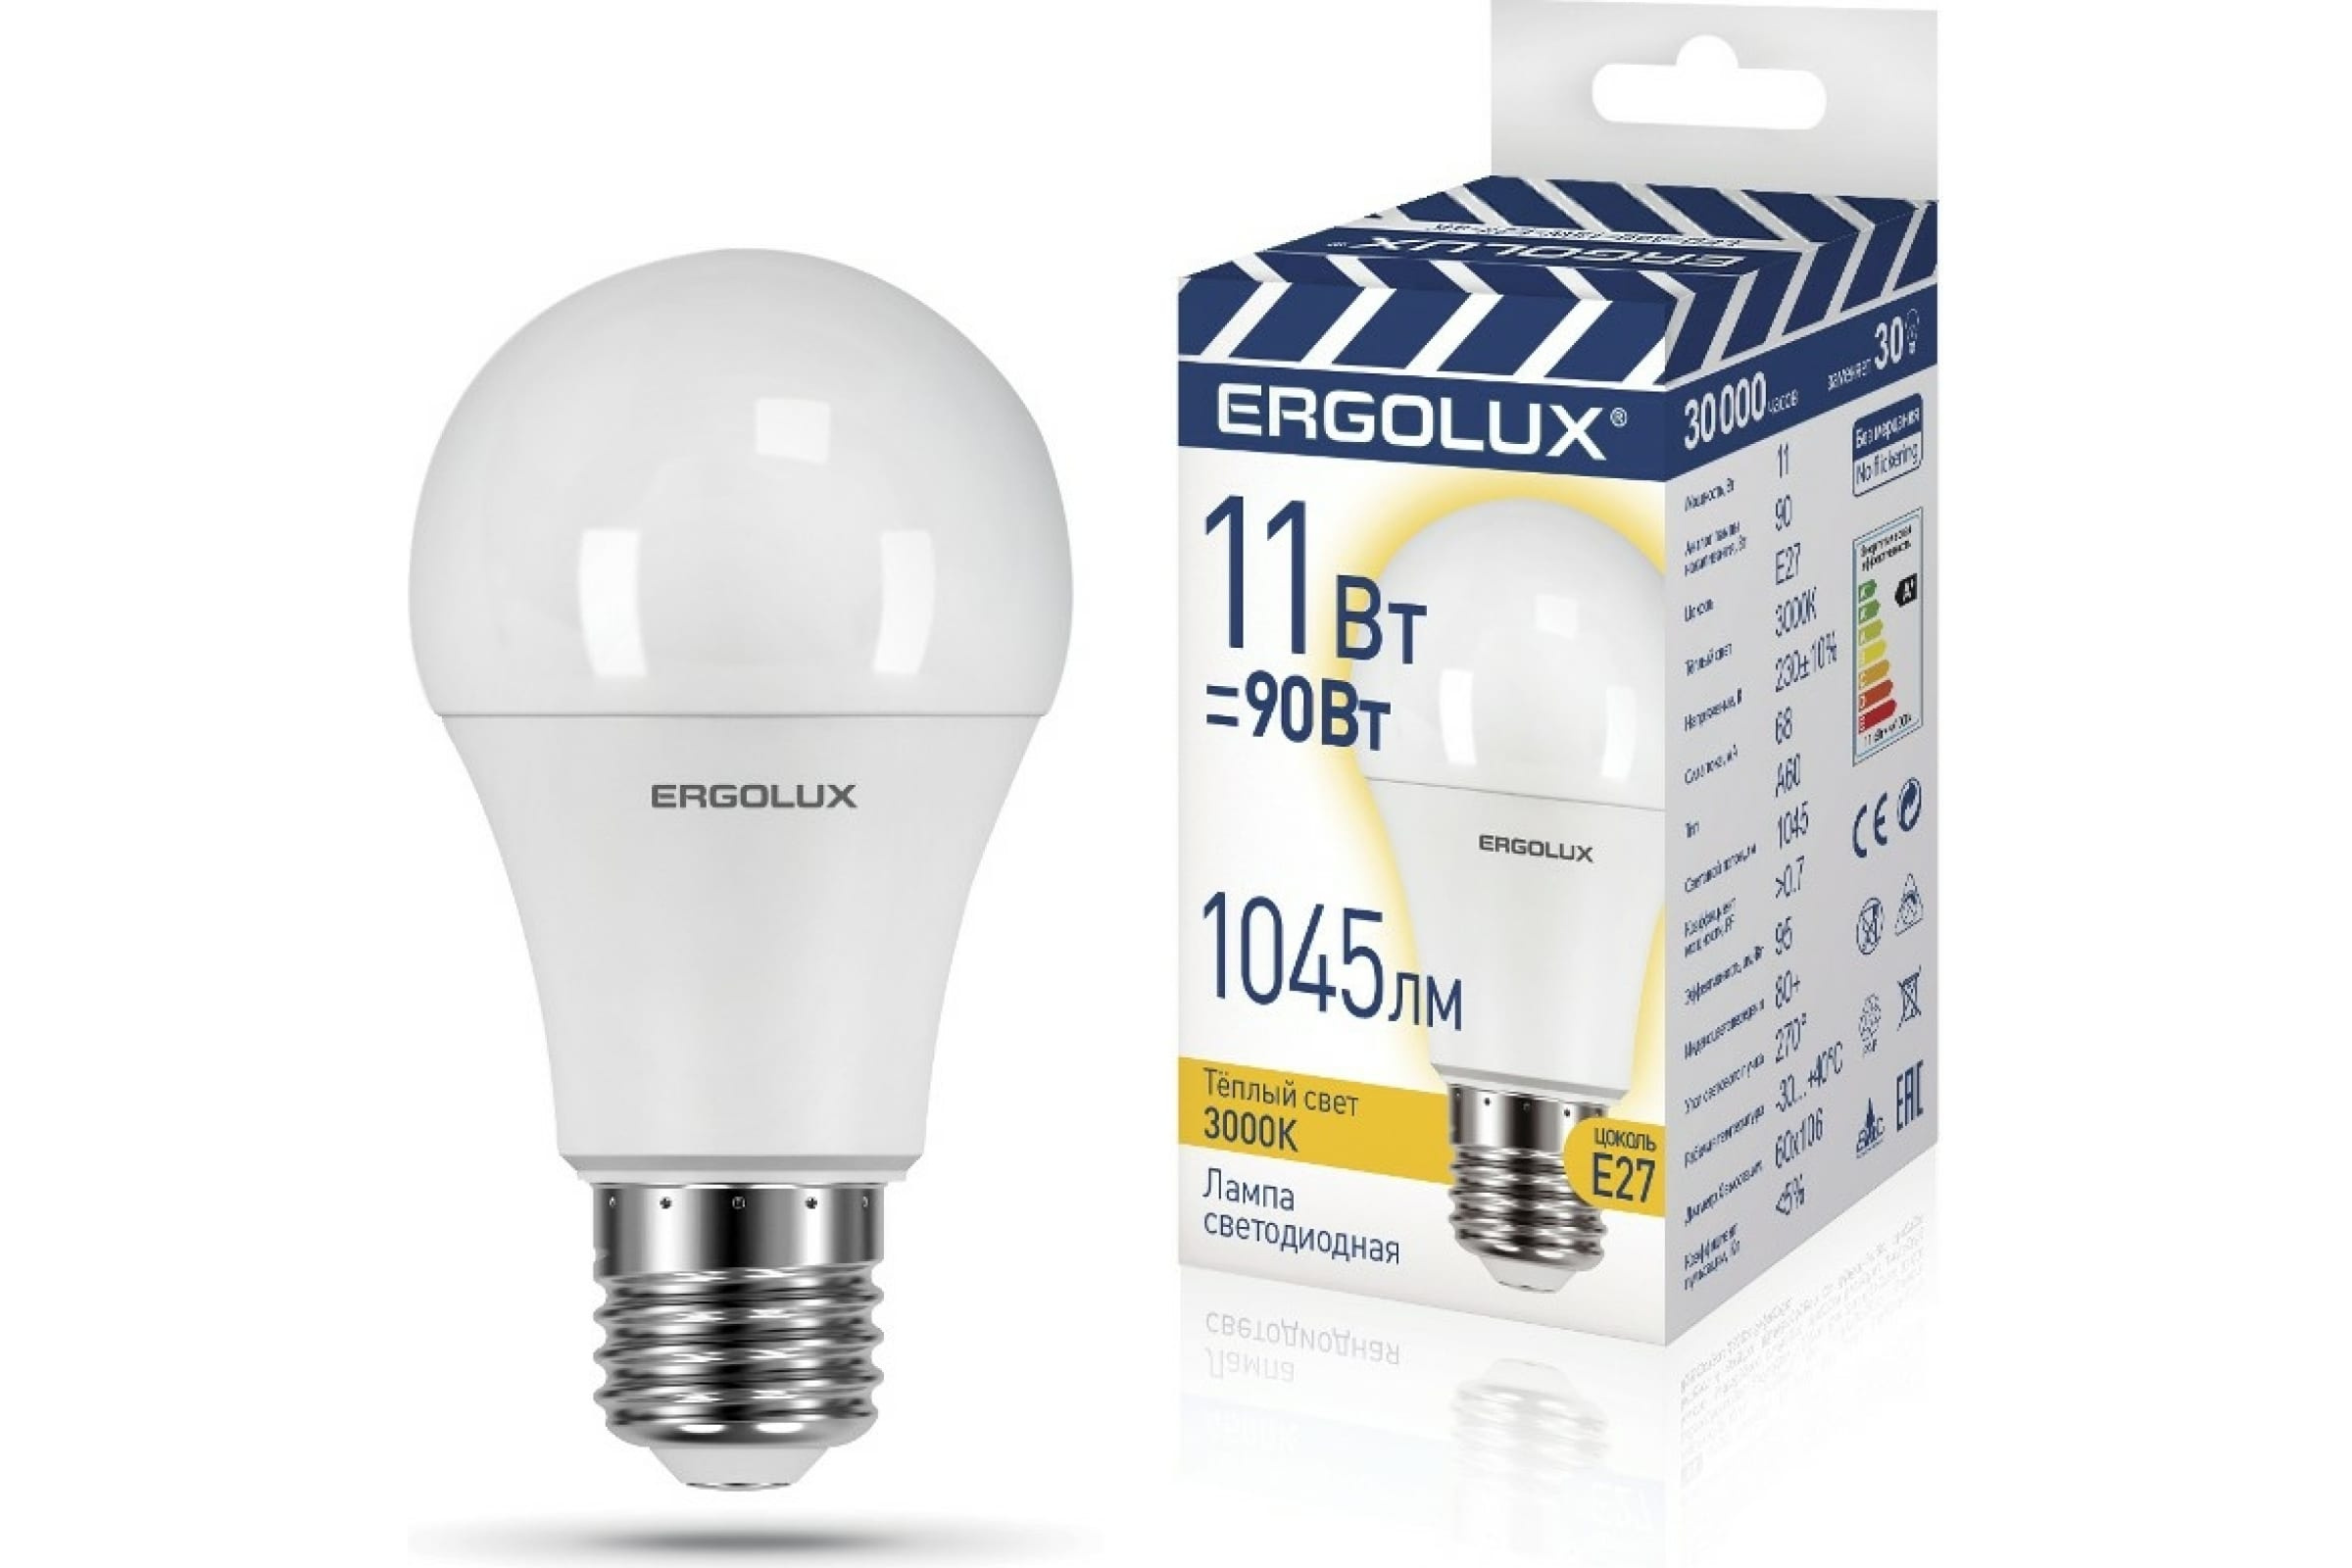 Ergolux LED-A60-11W-E27-3K (Эл.лампа светодиодная ЛОН 11Вт E27 3000K 220-240В)